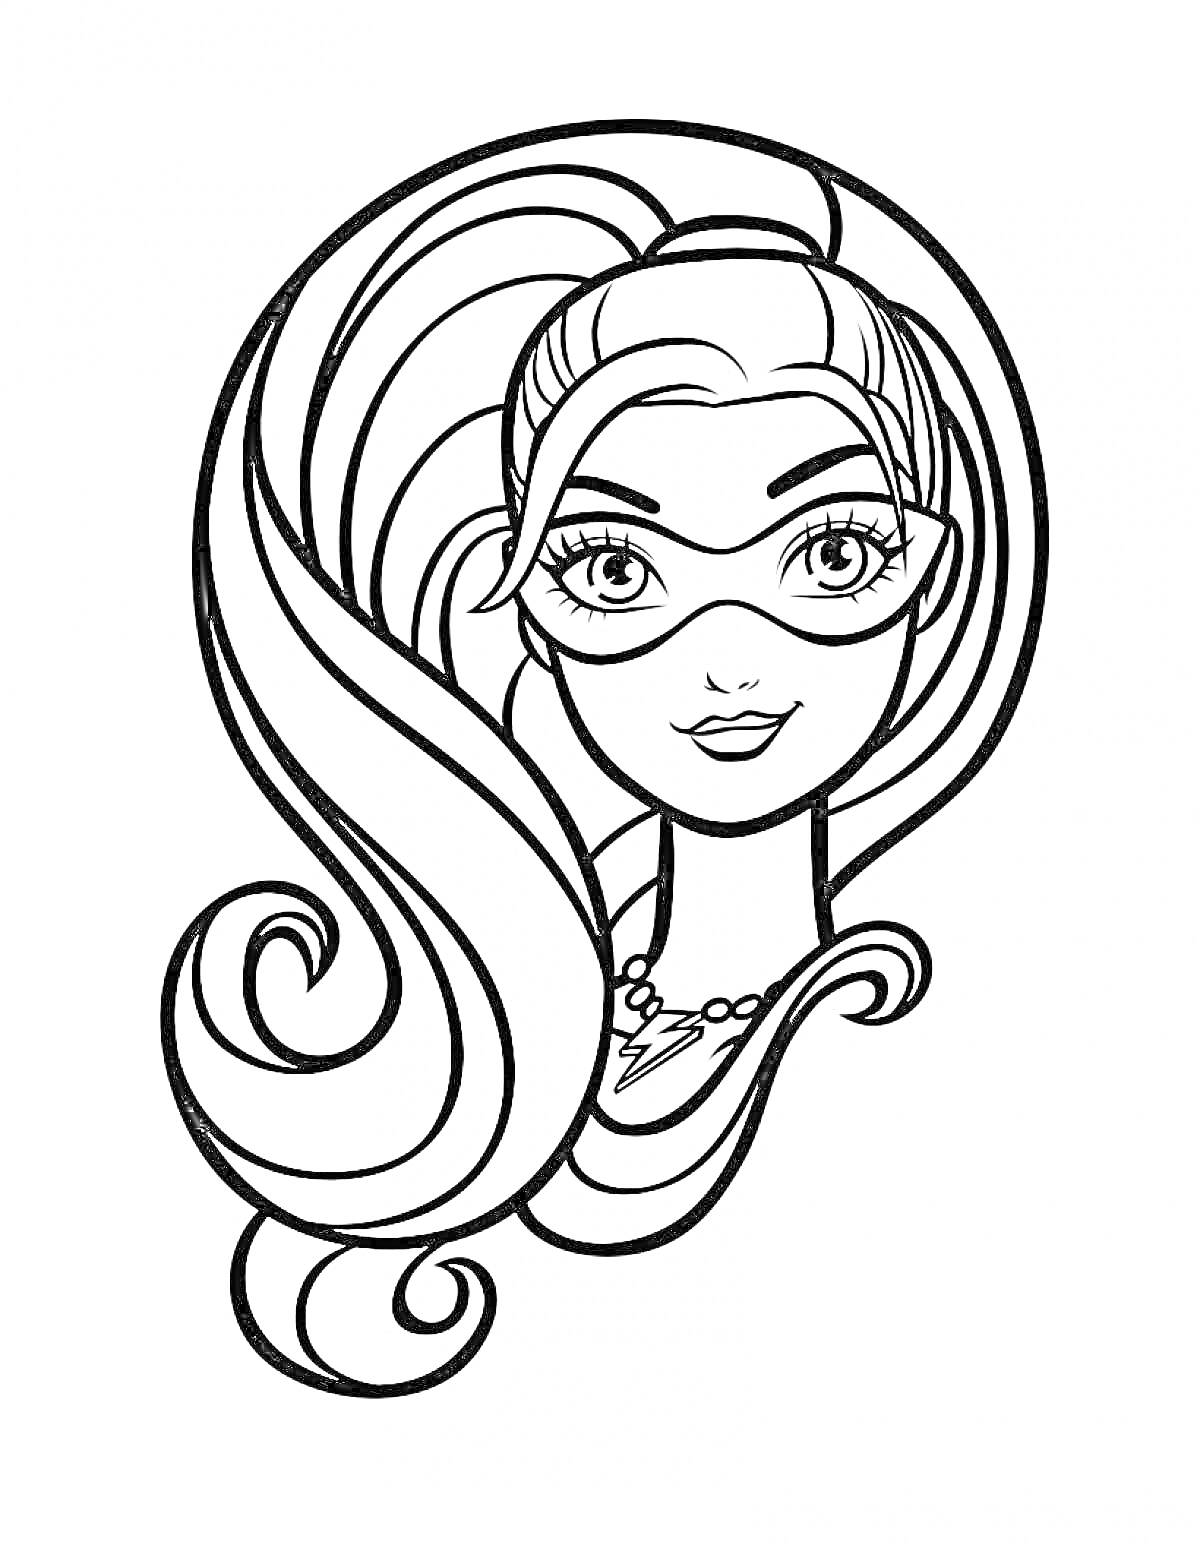 Барби Супер Принцесса, портрет с длинными волосами, в маске и ожерелье